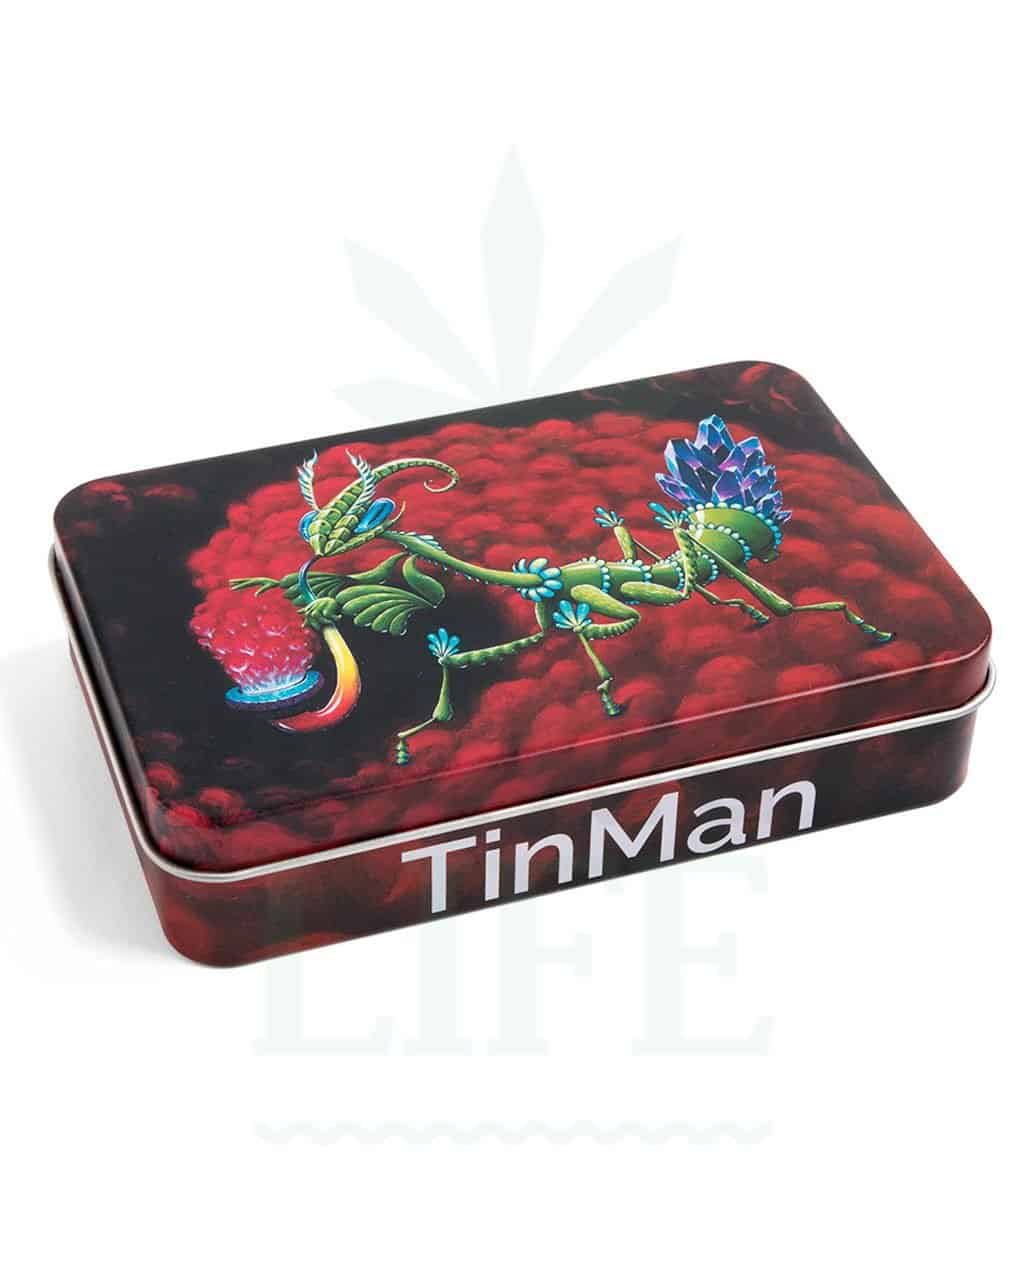 Aufbewahrung TinMan TinCase Alubox 13cm x 8,5cm